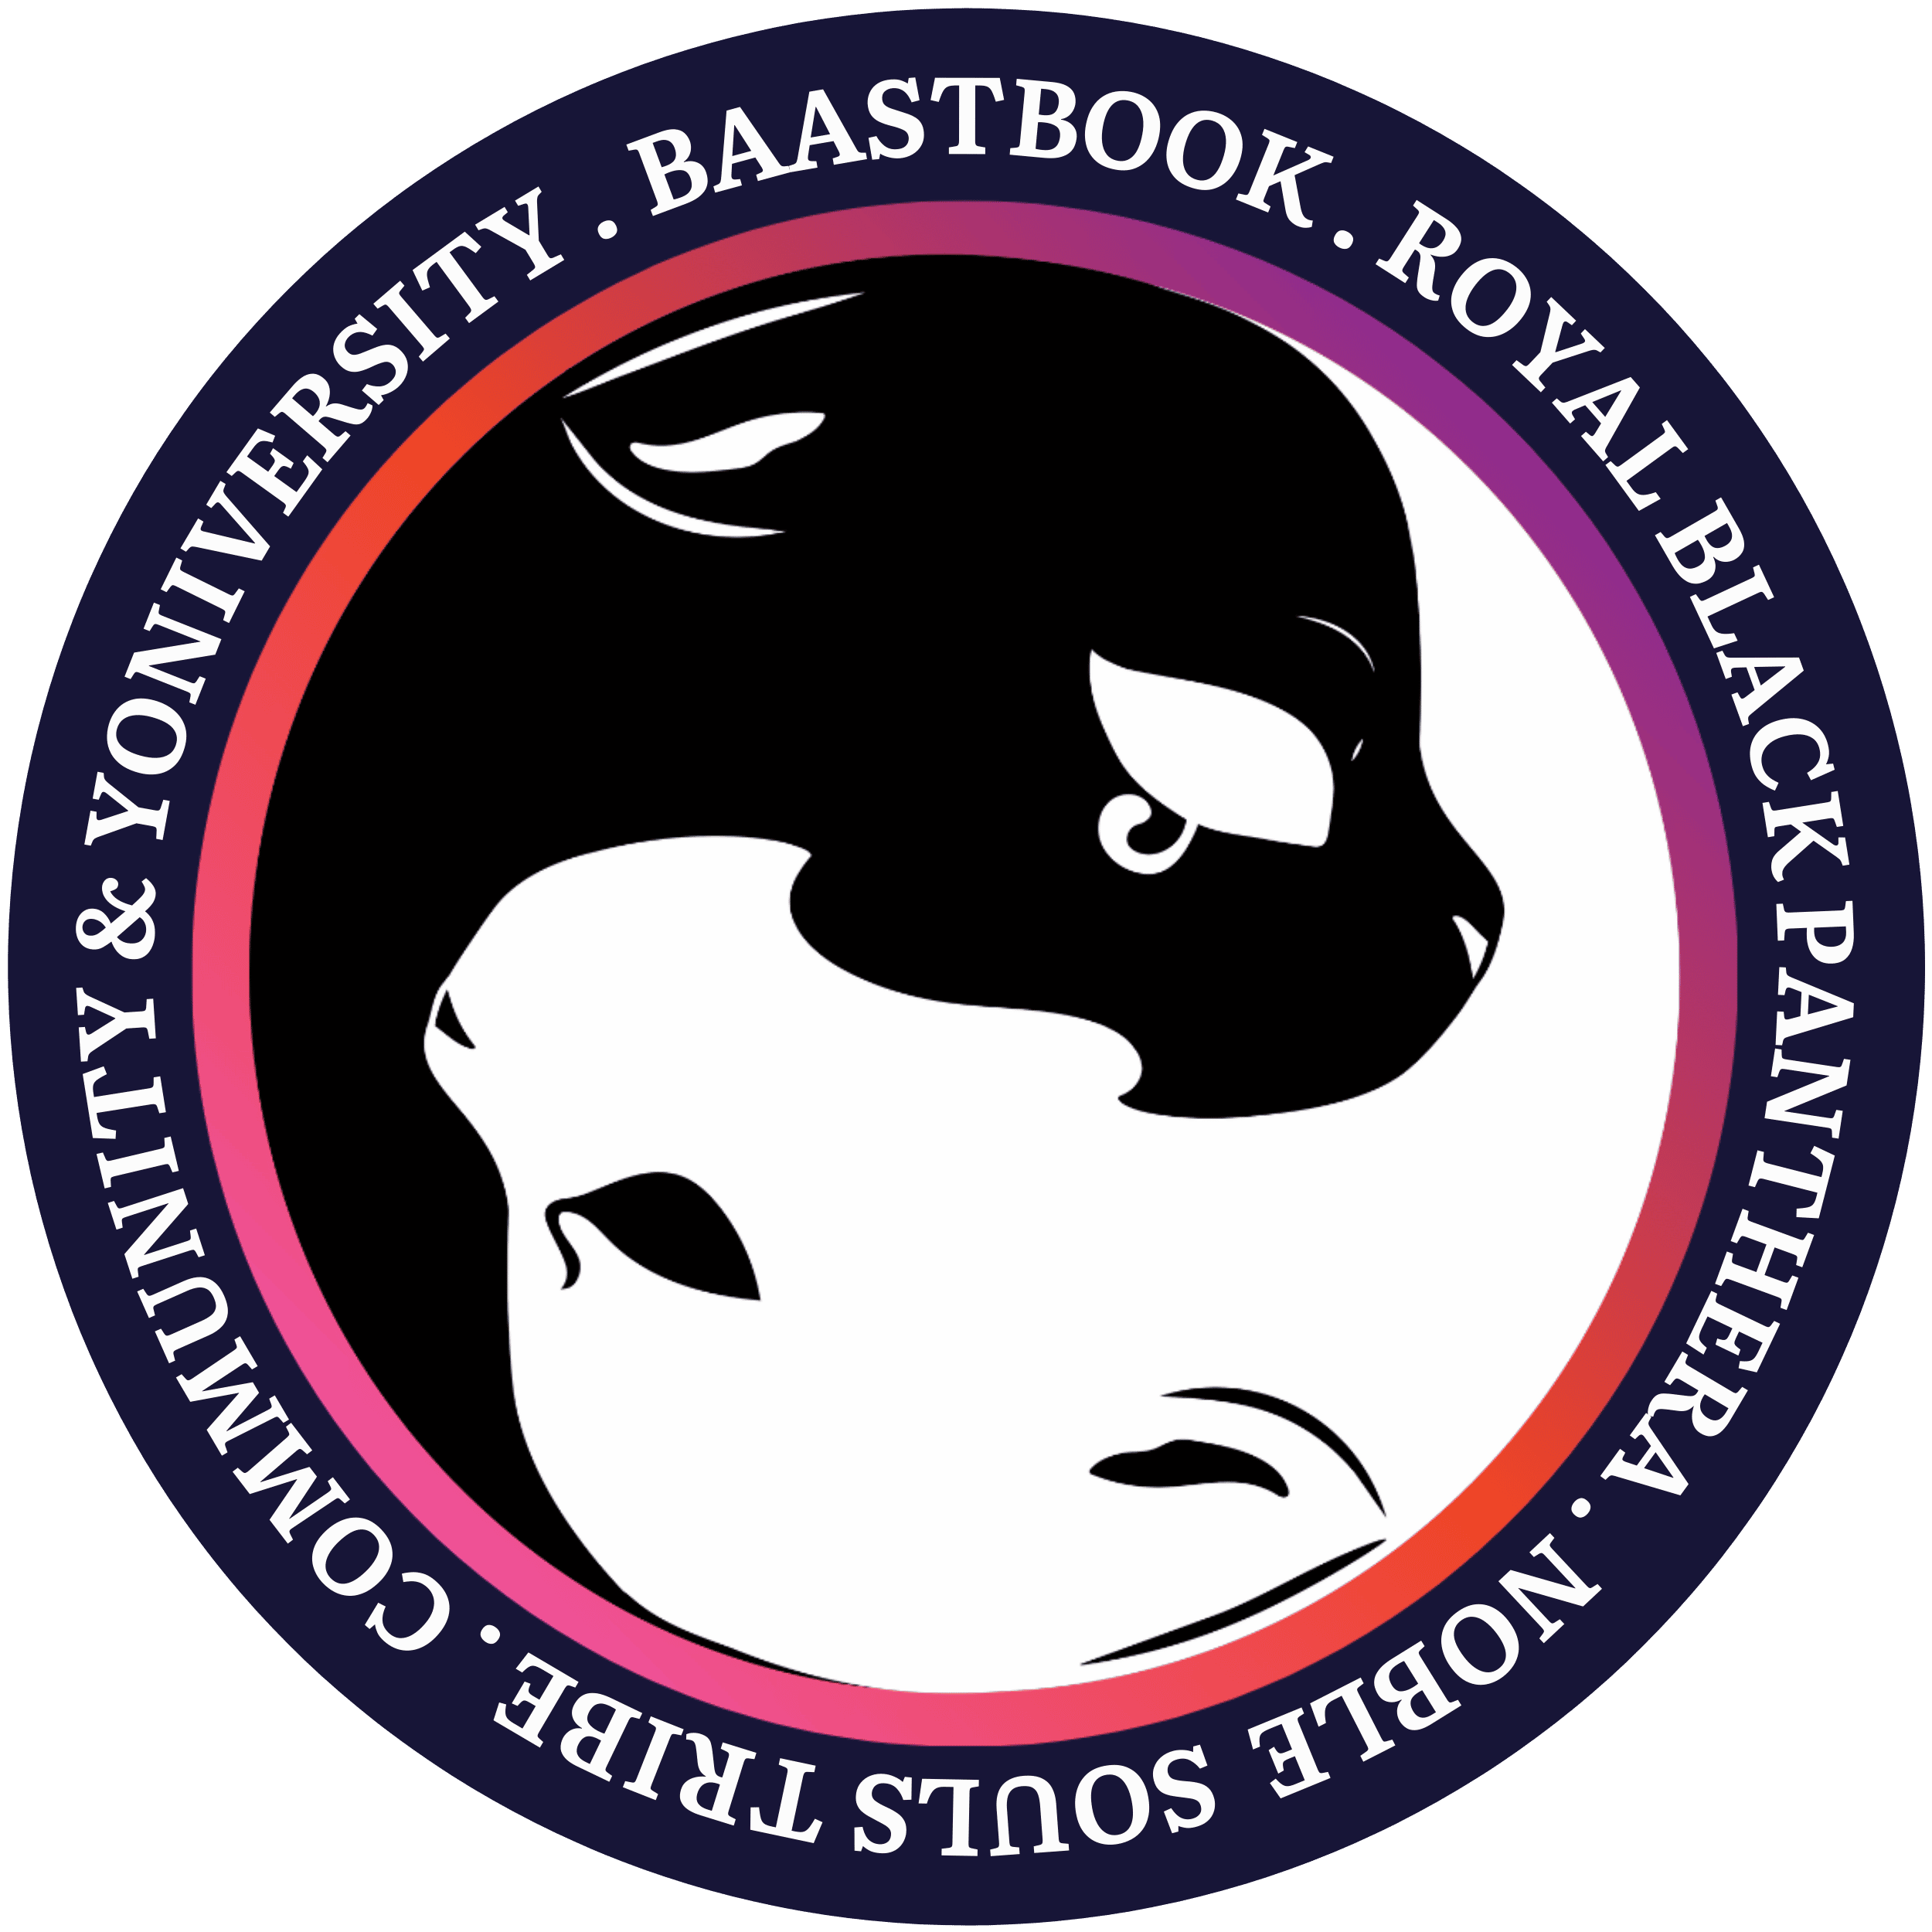 BaastBook University Style Logo Panther Cat Yin Yang Square 02